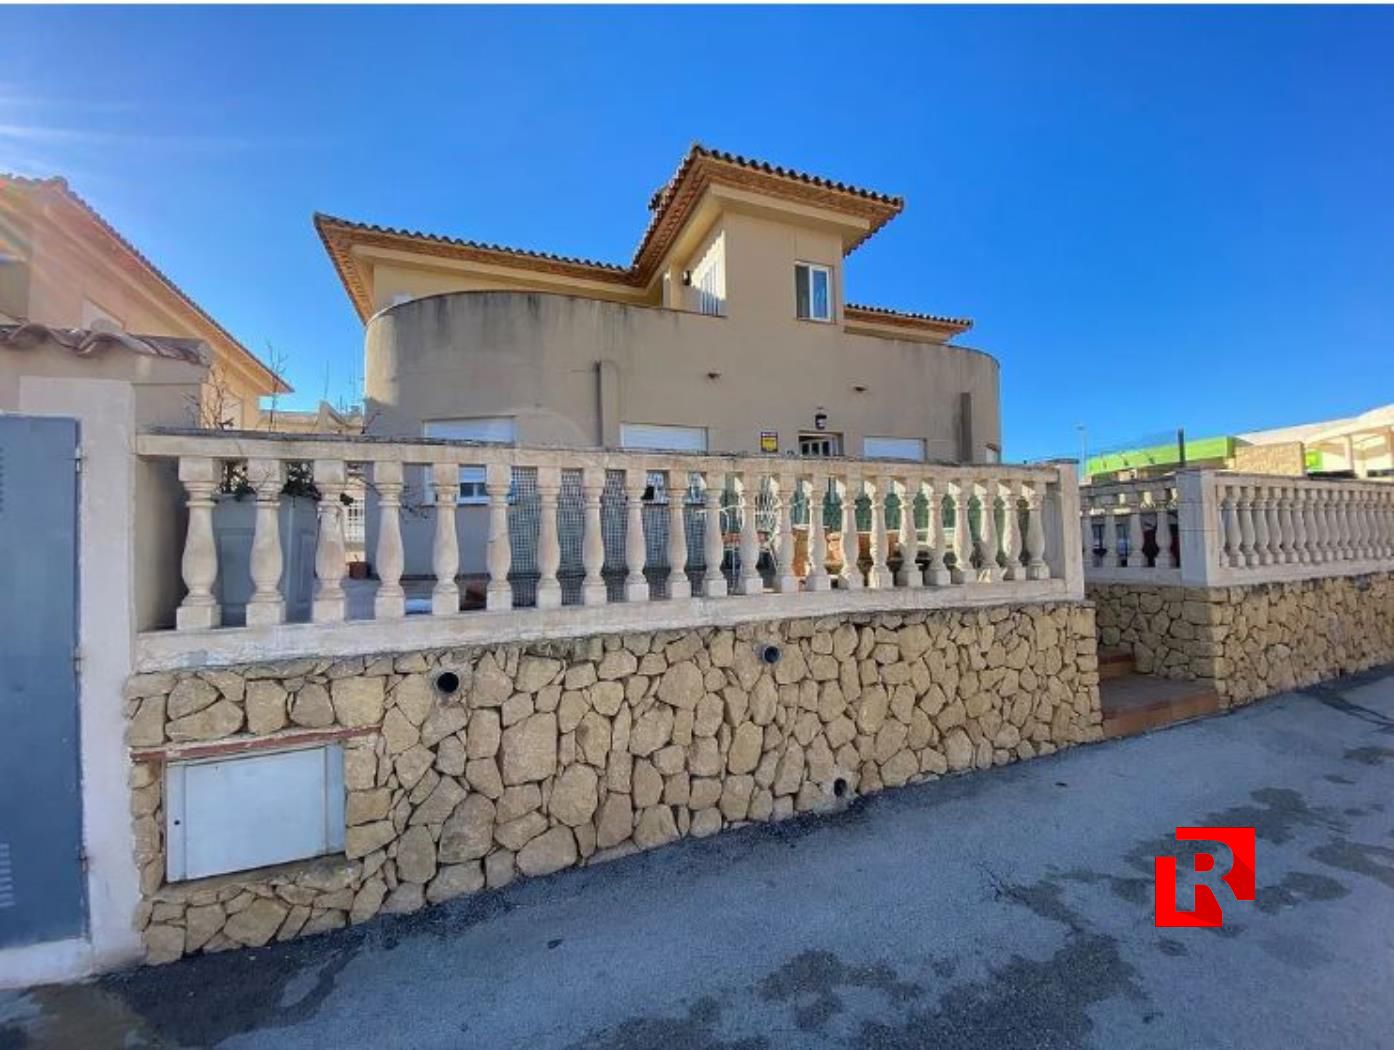 Villa zum Verkauf in Wohngegend - La Nucia, 9 km von Benidorm entfernt